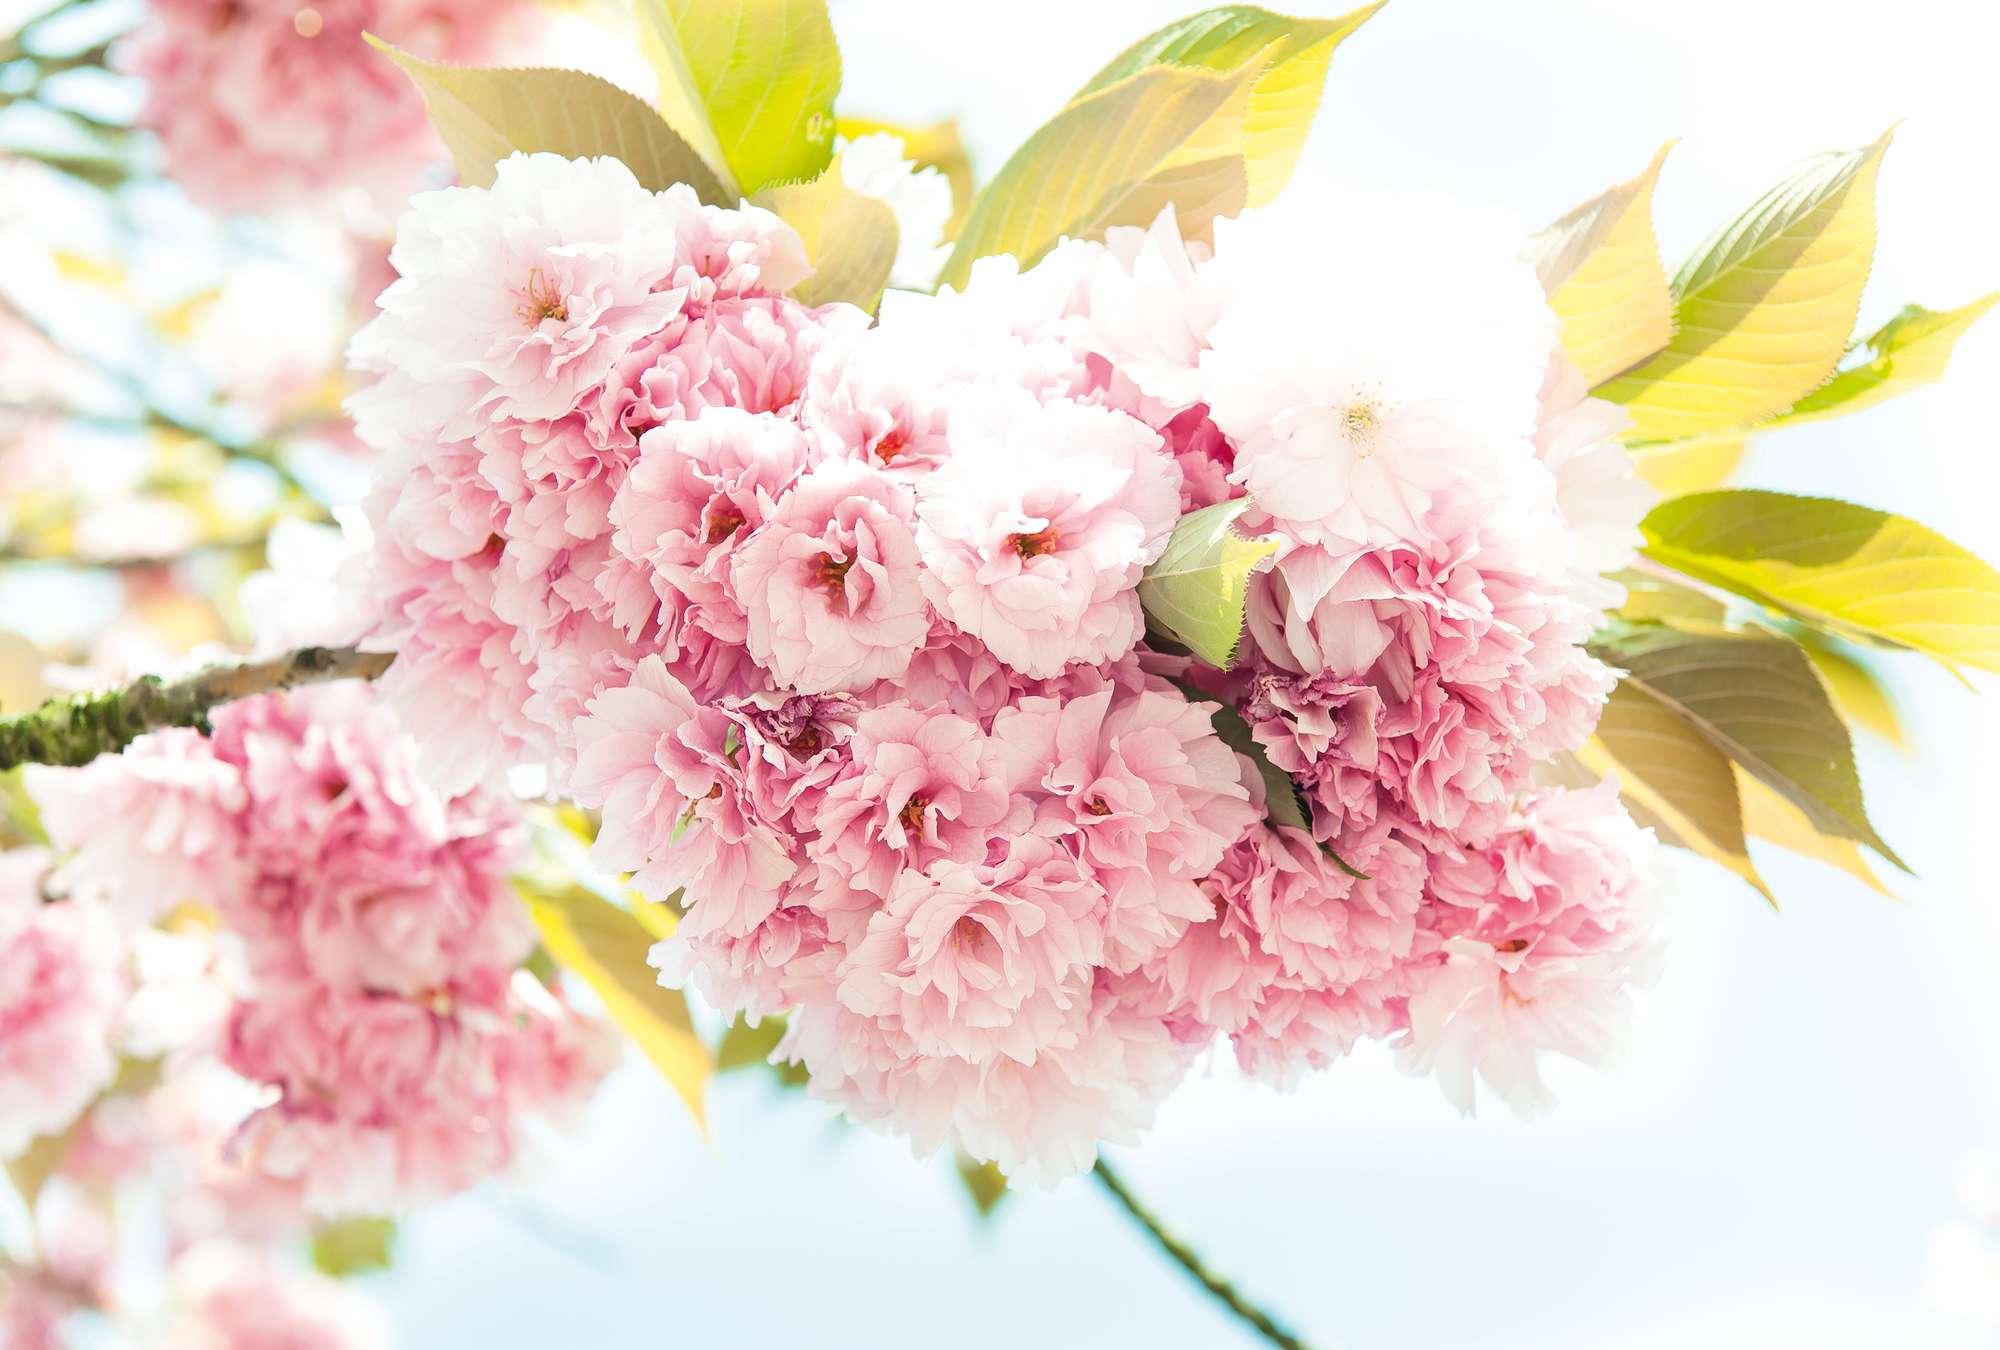             Primavera, rosa - Flores delicadas en óptica 3D y formato XXL
        